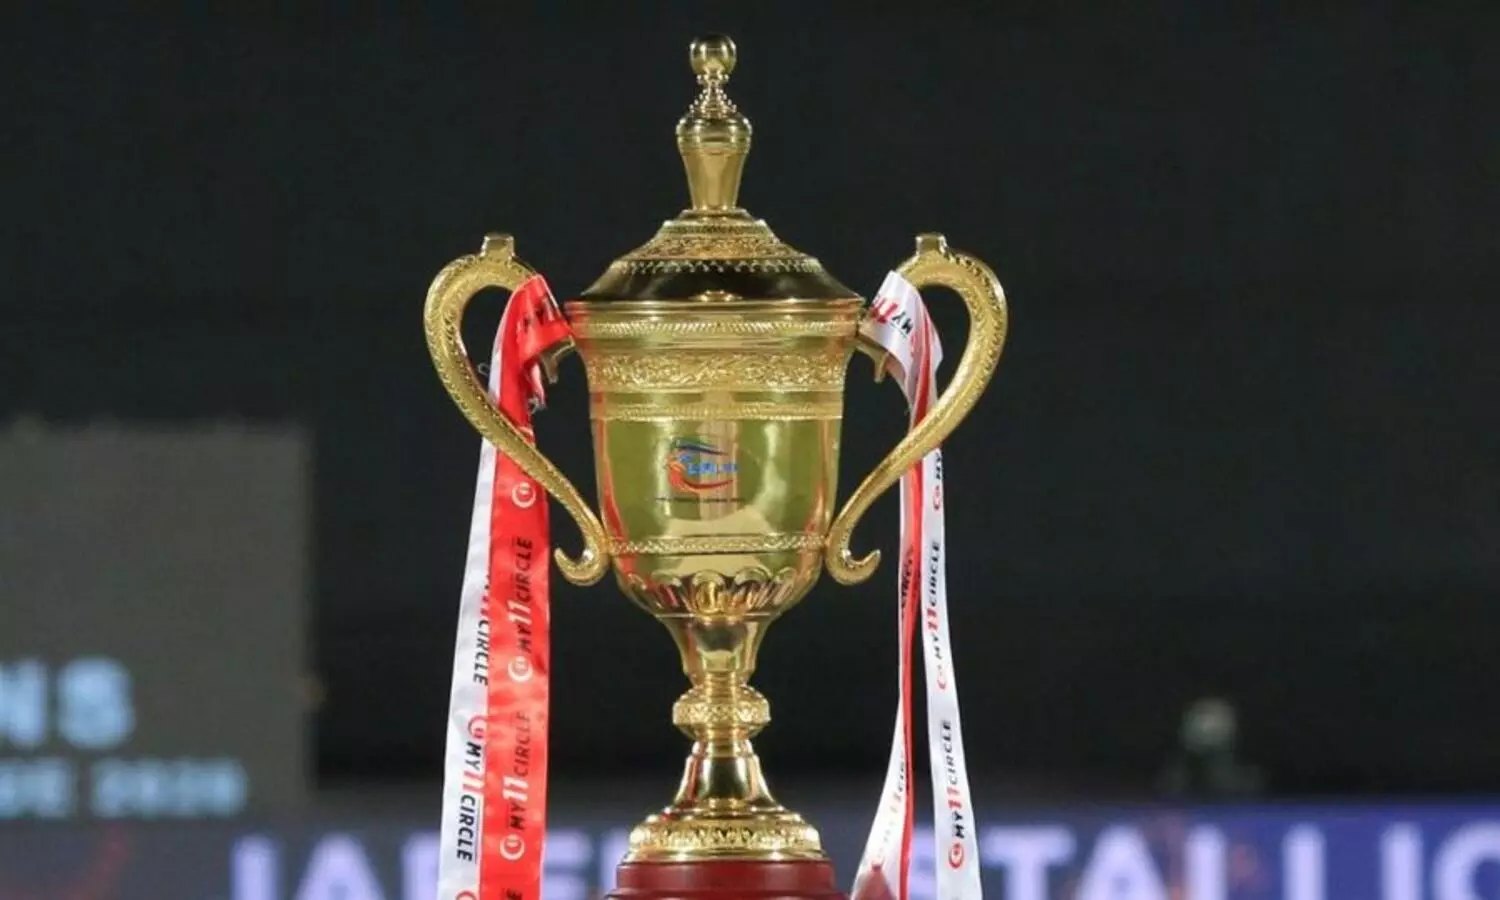 आर्थिक संकट के बीच स्थगित हुई लंका प्रीमियर लीग (LPL), छीन सकती है एशिया कप की मेजबानी